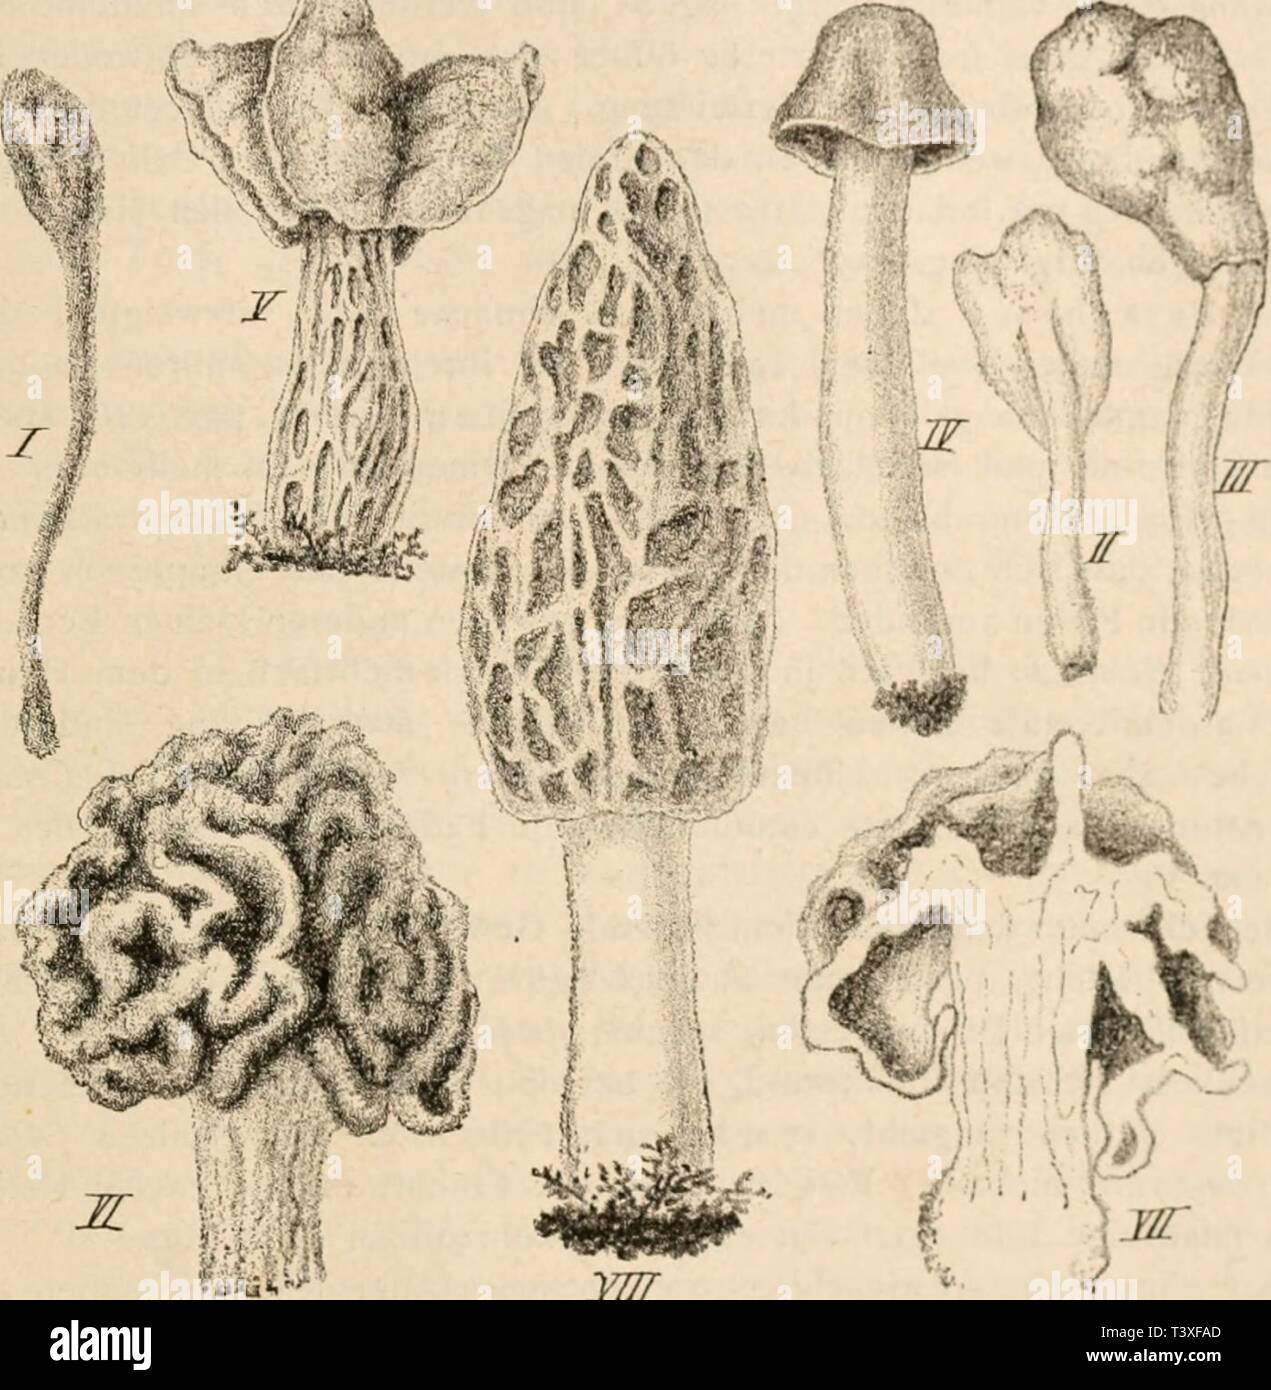 Archive image from page 484 of Die pilze in morphologischer, physiologischer,. Die pilze in morphologischer, physiologischer, biologischer und systematischer beziehung  diepilzeinmorpho00zopf Year: 1890  Abschnitt VI. Systematik und Kntwickclun'sicsciiiciitc. 465 bei den Perisporiaceen in cleistocarper, bei den Sphaciiaceen in pcronocarpischer Form), besitzen die Discomyceten der überwiegendenMclirzahl nach gyninocar|)e Schlauchfrüchte, die man eigentlich als »Schlauchlager« bezeichnen mtisste. Nur wenige Gattungen bilden anfanglich völlig geschlossene (angiocarpe) Früchte, die sich aber s|)ät Stock Photo